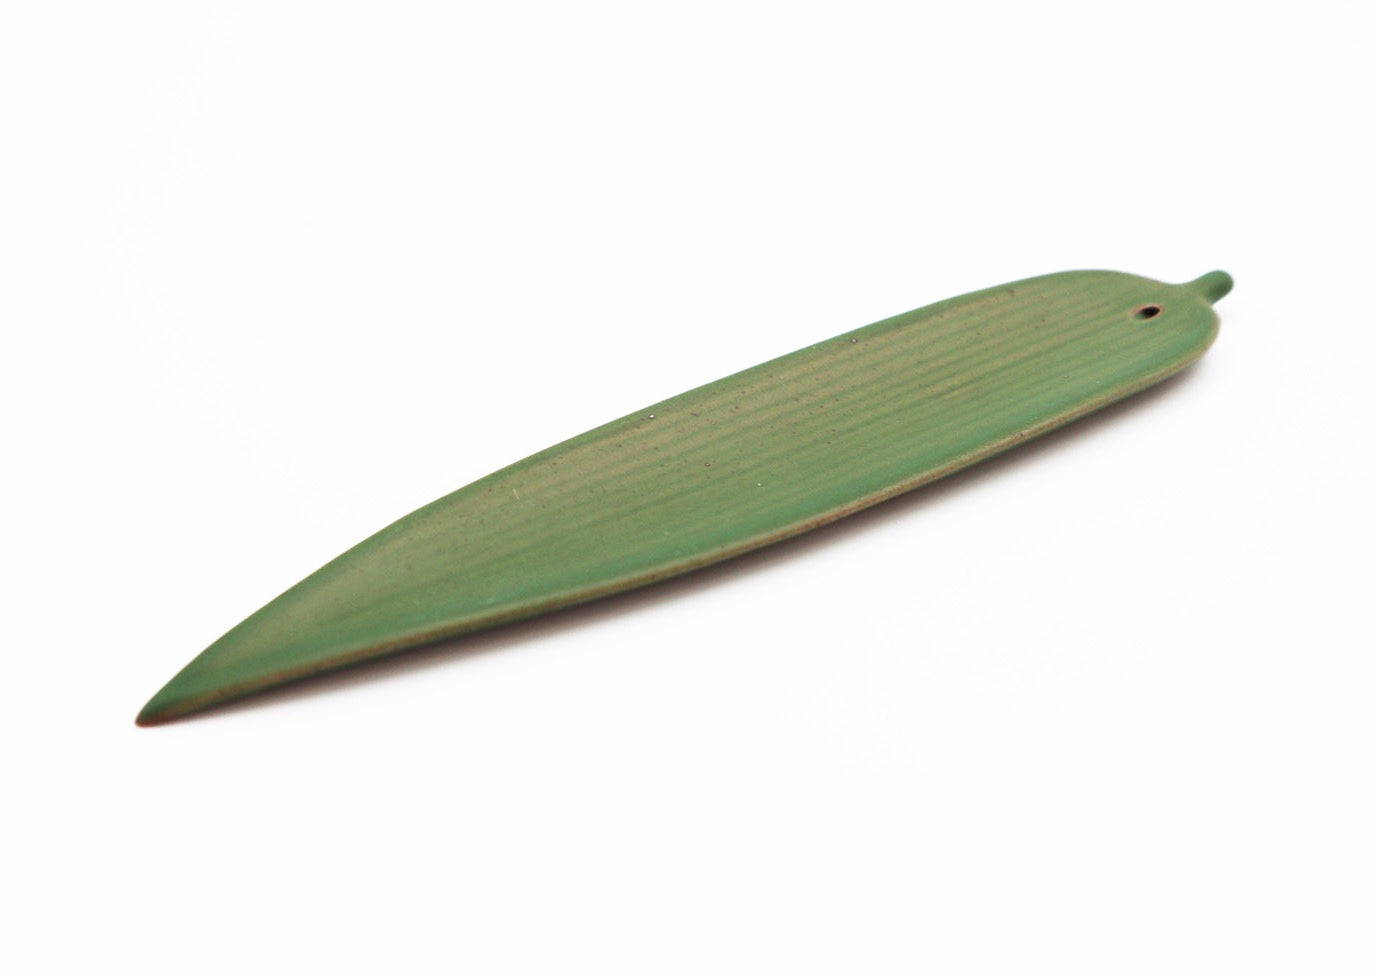 Green bamboo leaf incense stick holder